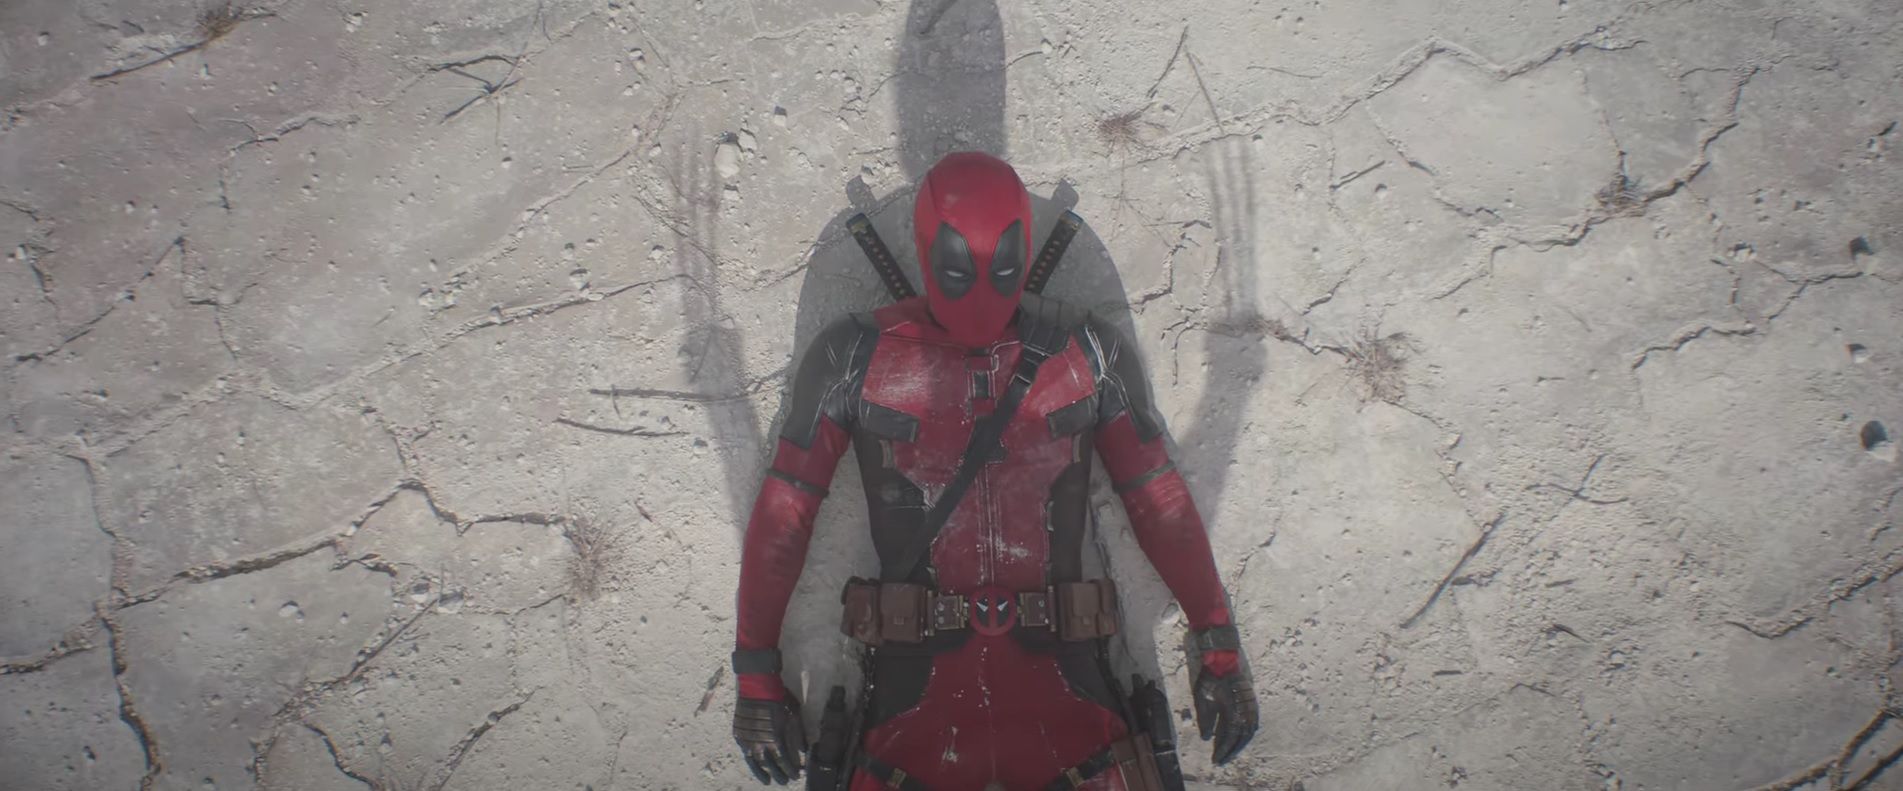 Ryan Reynolds as Deadpool in Deadpool and Wolverine